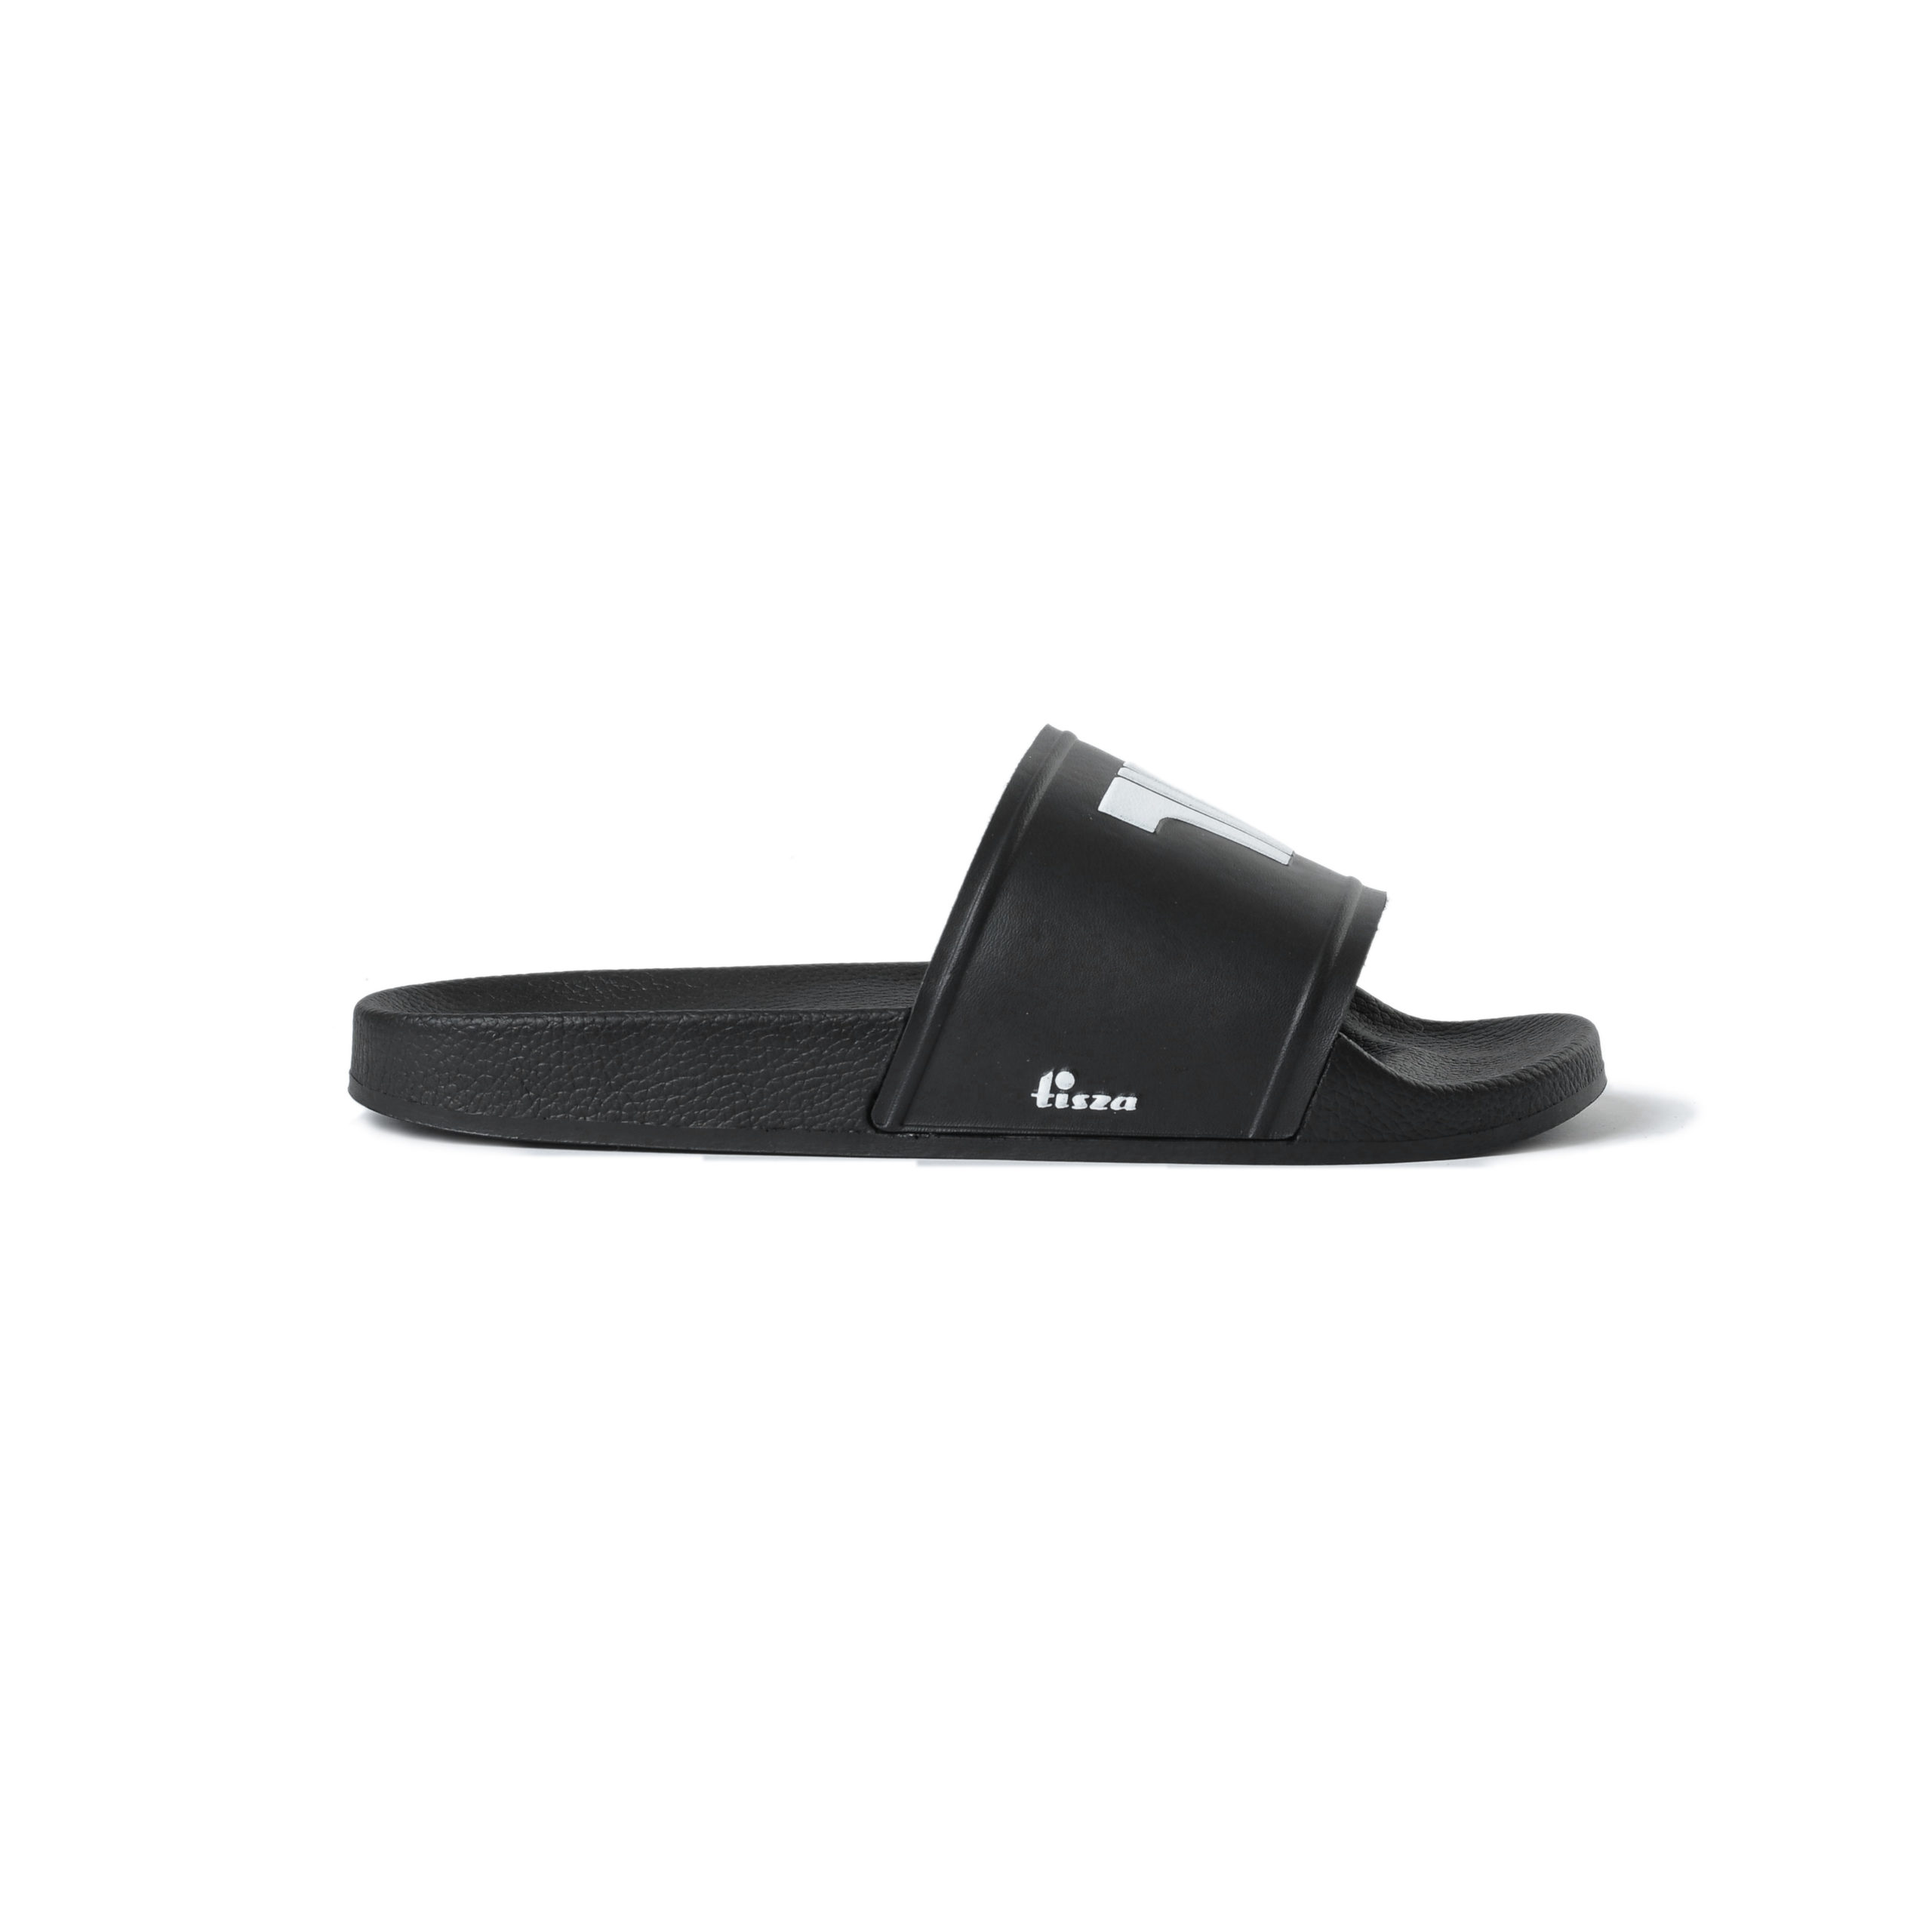 Tisza shoes - Sliders - Black-white